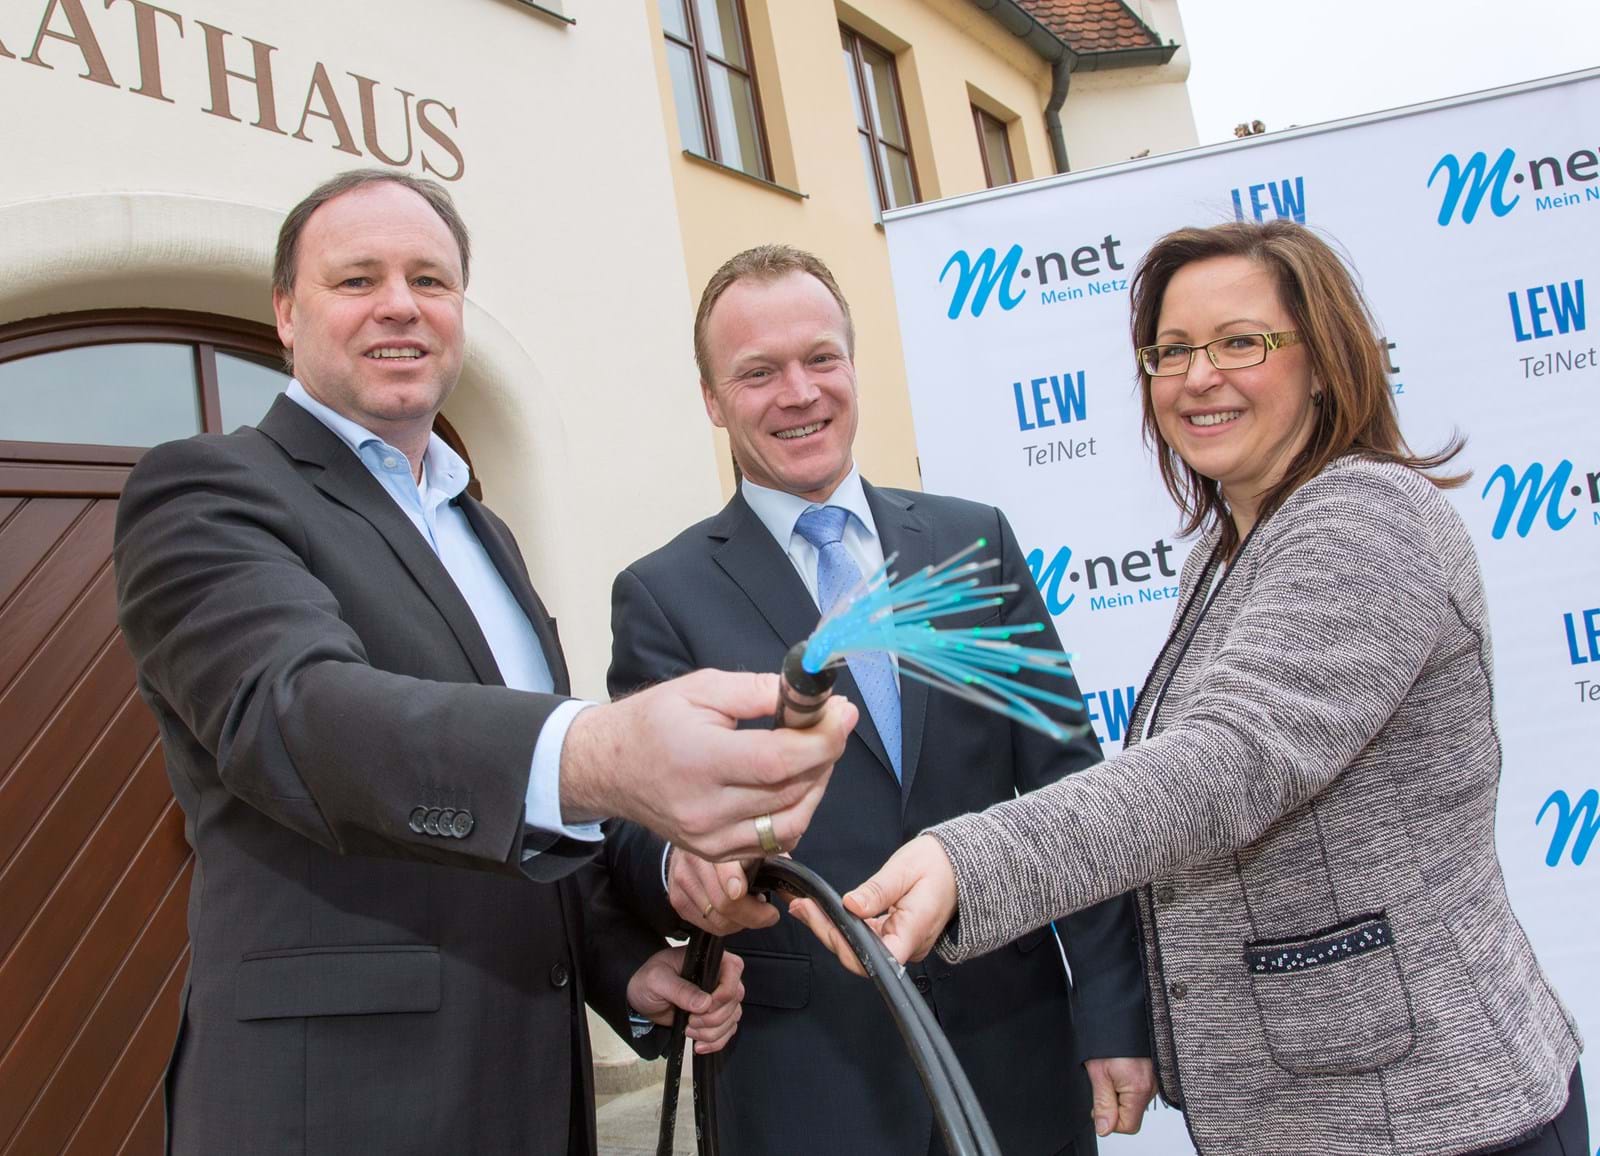 Bürgermeister Thomas Wörz, M-net Regionalbeauftragte Gabi Emmerling und LEW TelNet Geschäftsführer Johannes Stepperger nahmen das neue Breitbandnetz in Betrieb.